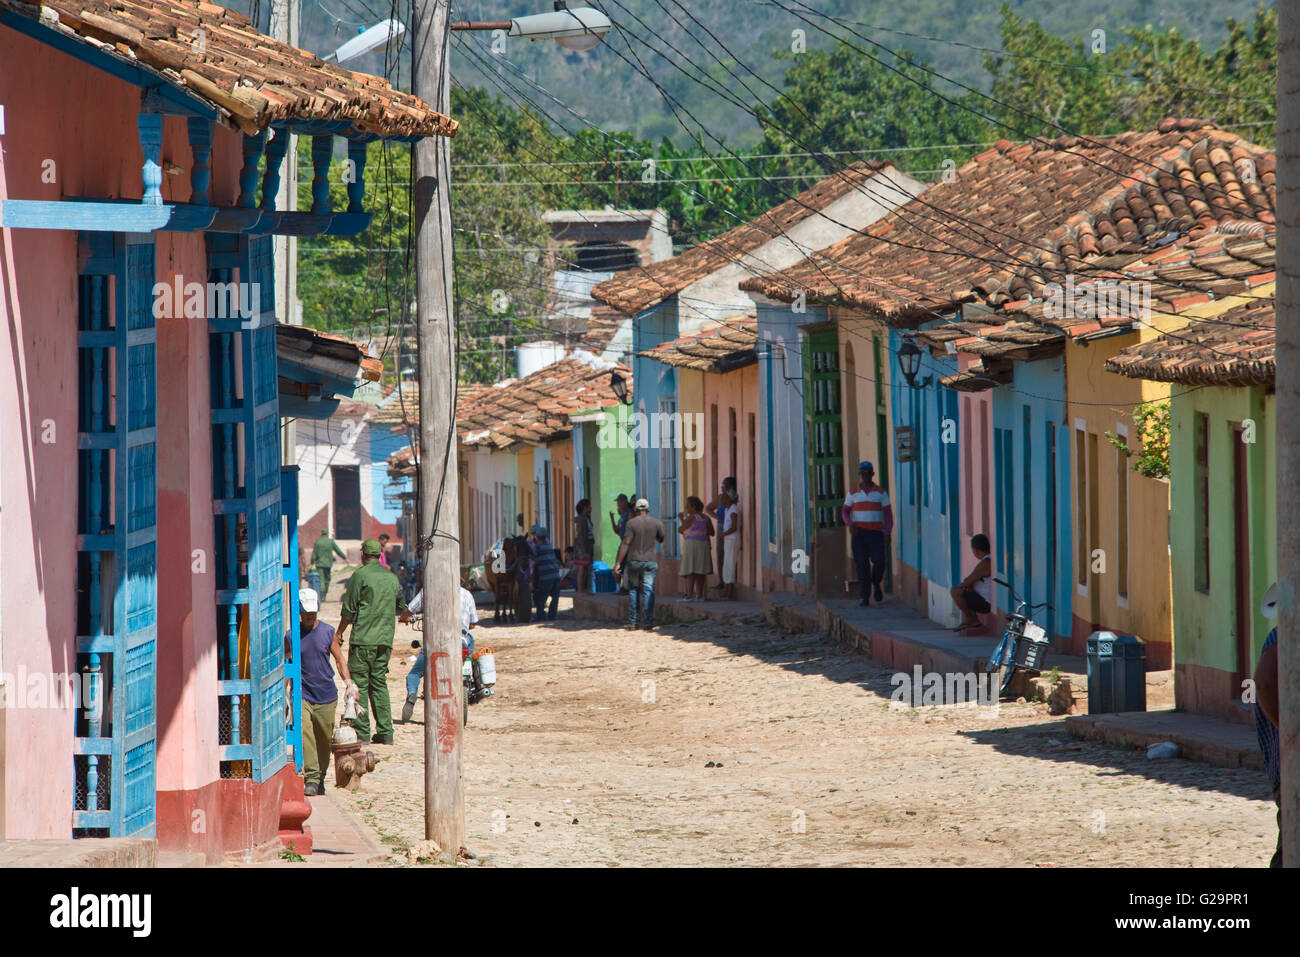 Tipico conservati colorati edifici coloniali case in una strada vicino al centro di Trinidad di Cuba. Foto Stock